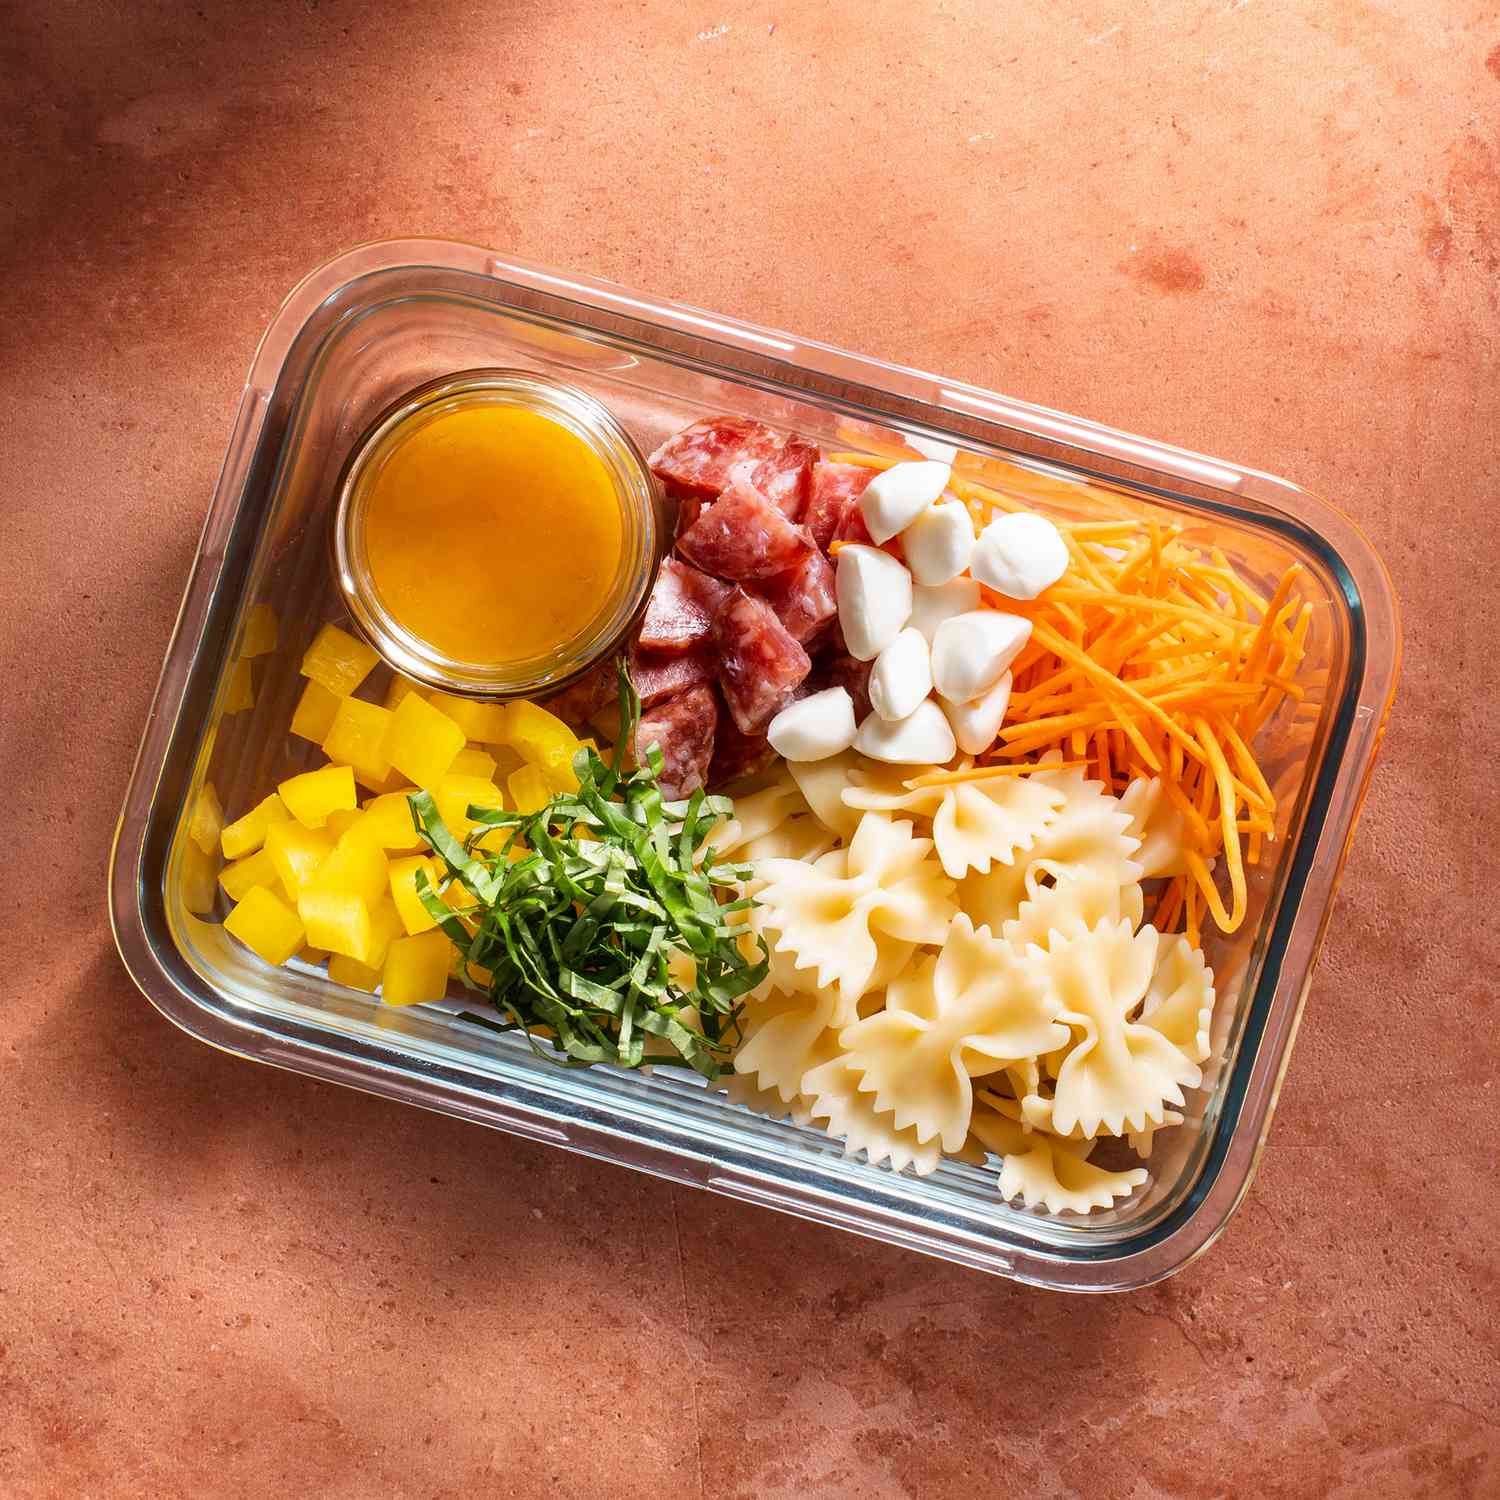 Box lunch con ensalada de pasta y vinagreta